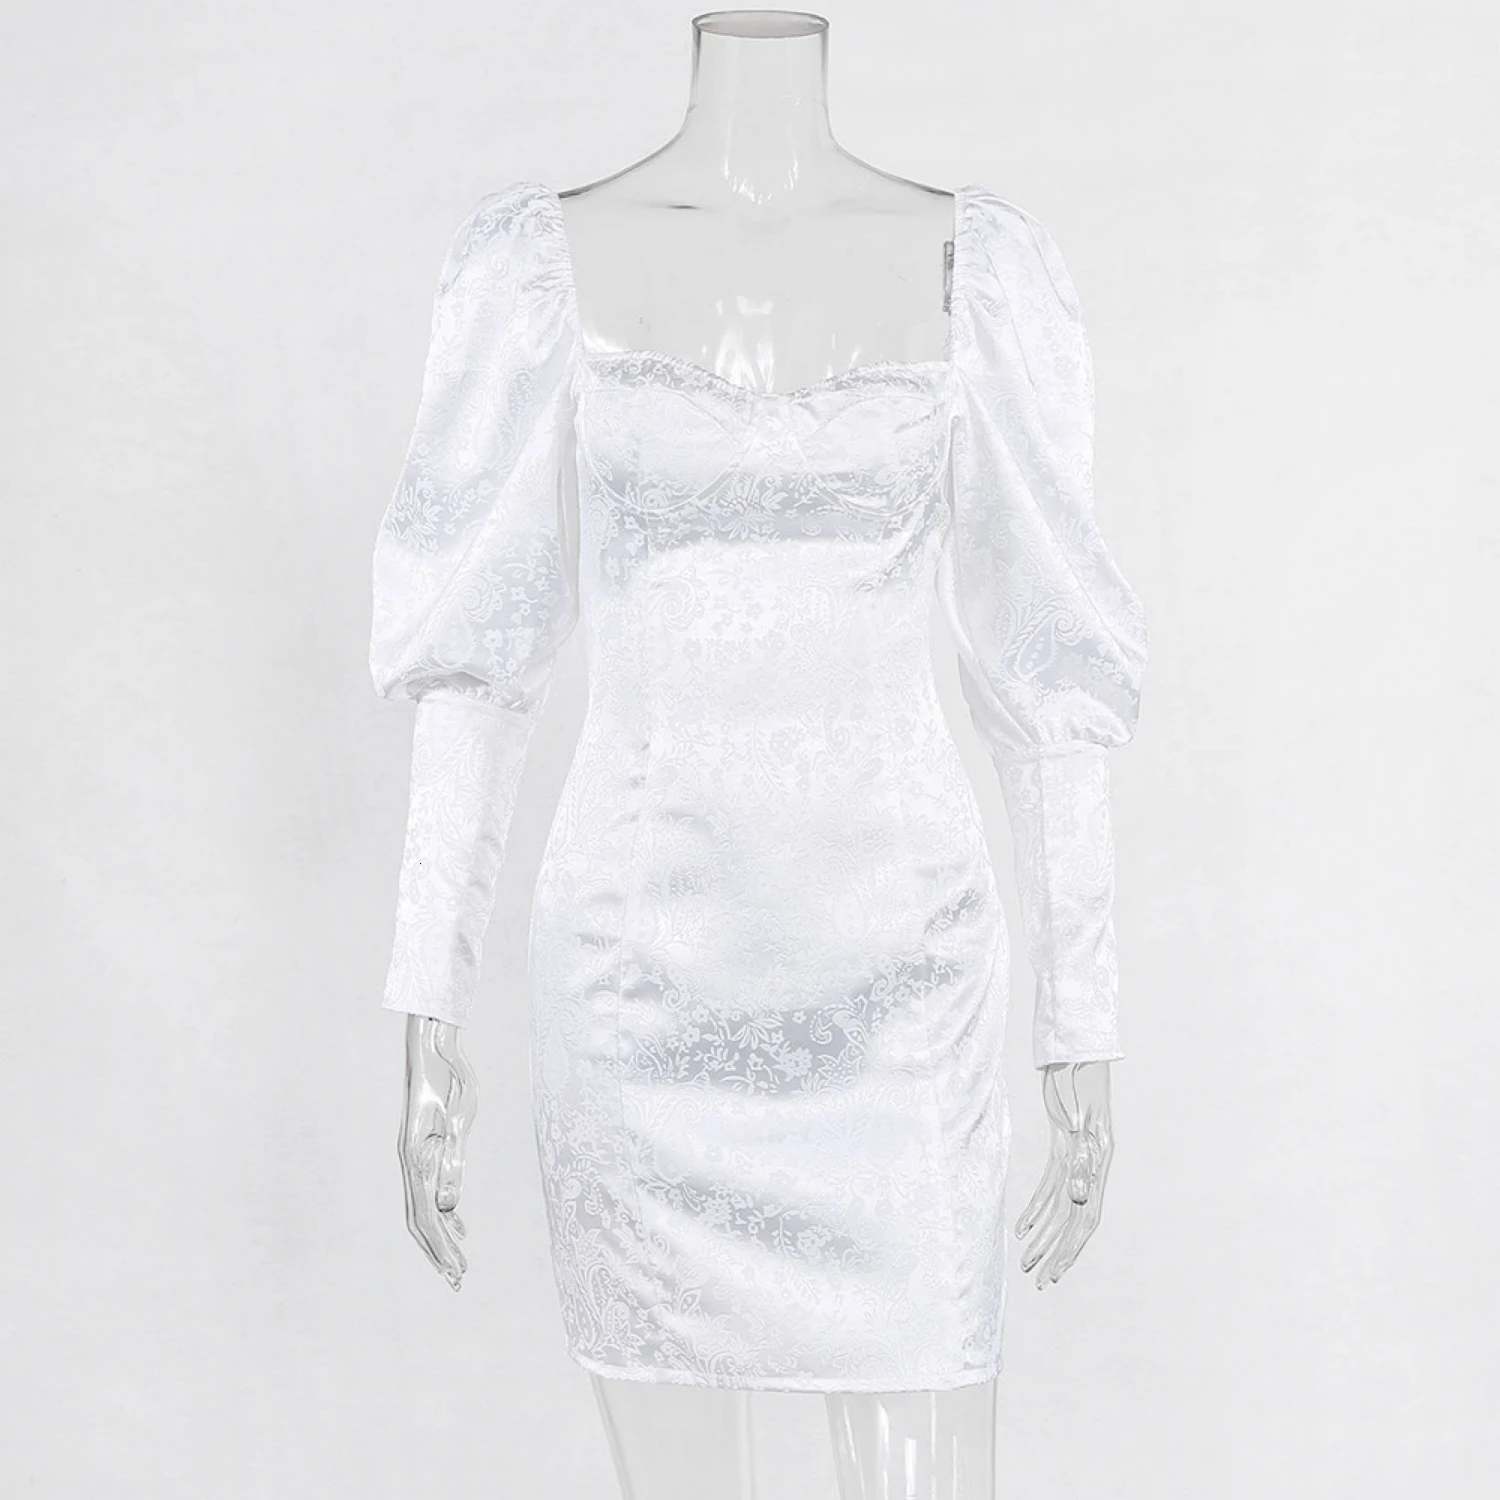 Белые элегантные обтягивающие сексуальные женские платья в стиле ретро, вечерние облегающие короткие платья с рукавами-фонариками, уличная одежда осень-зима